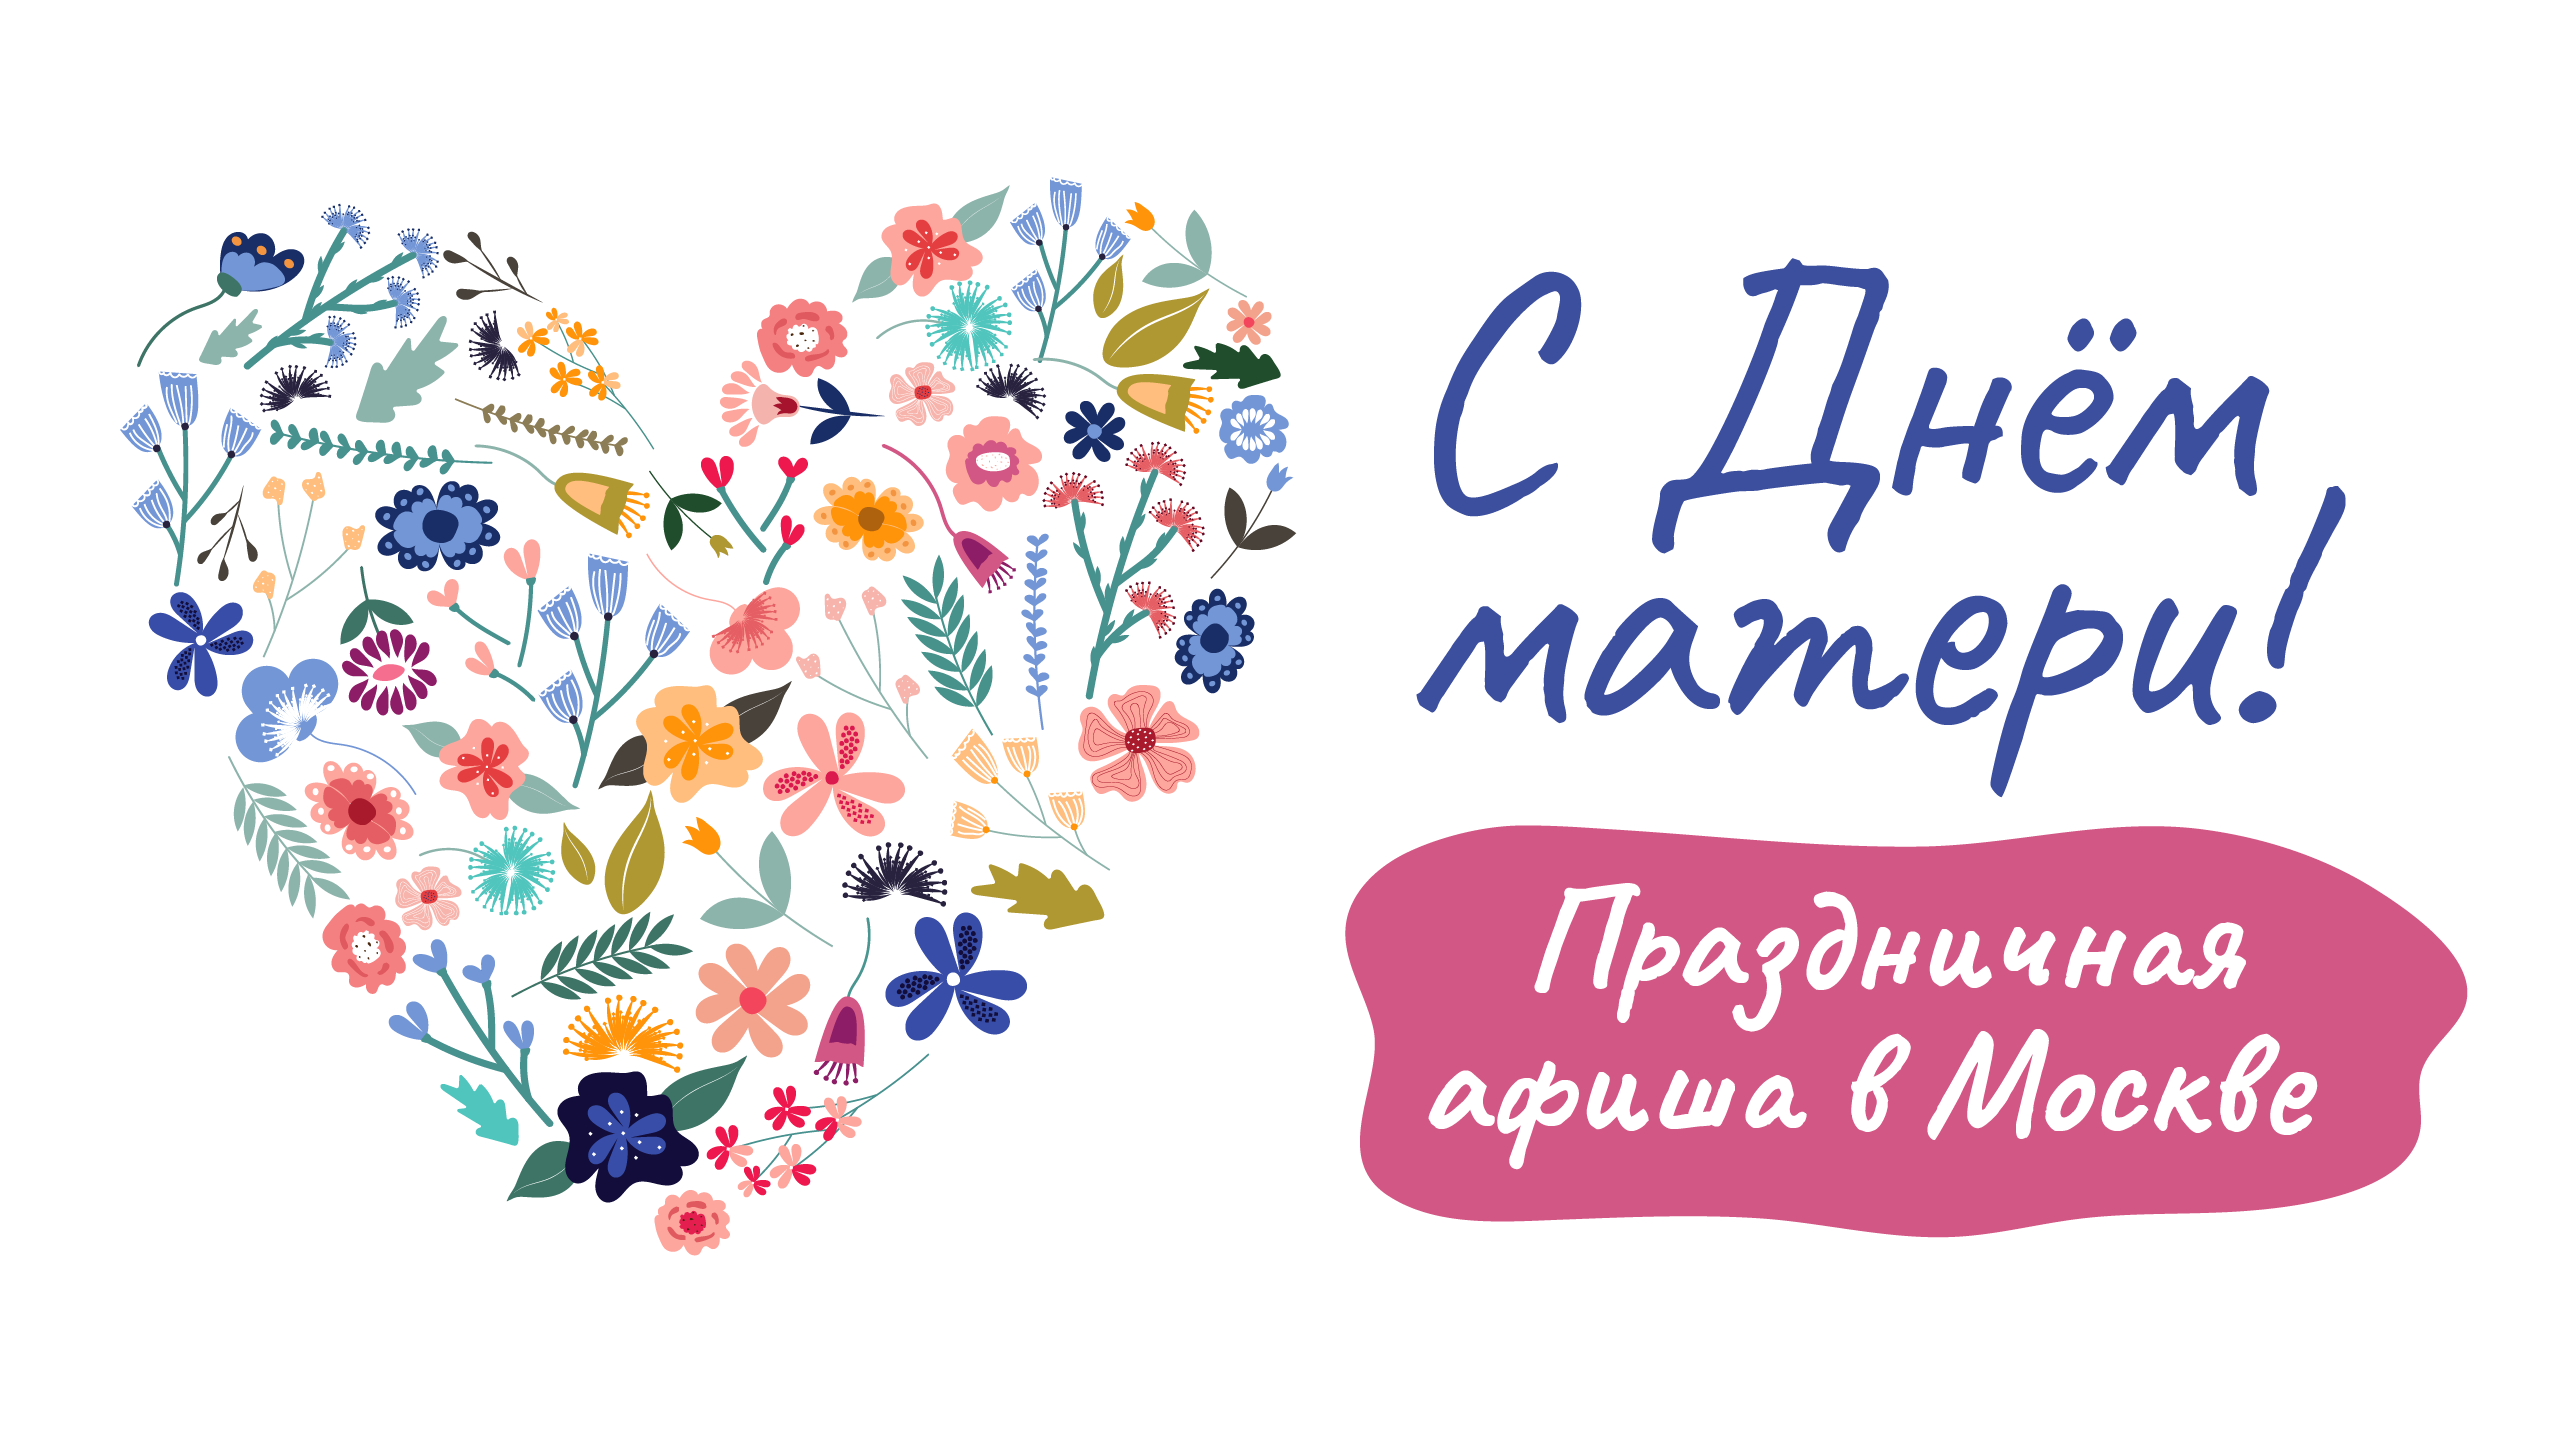 Анастасия Ракова рассказала о насыщенной программе ко Дню матери